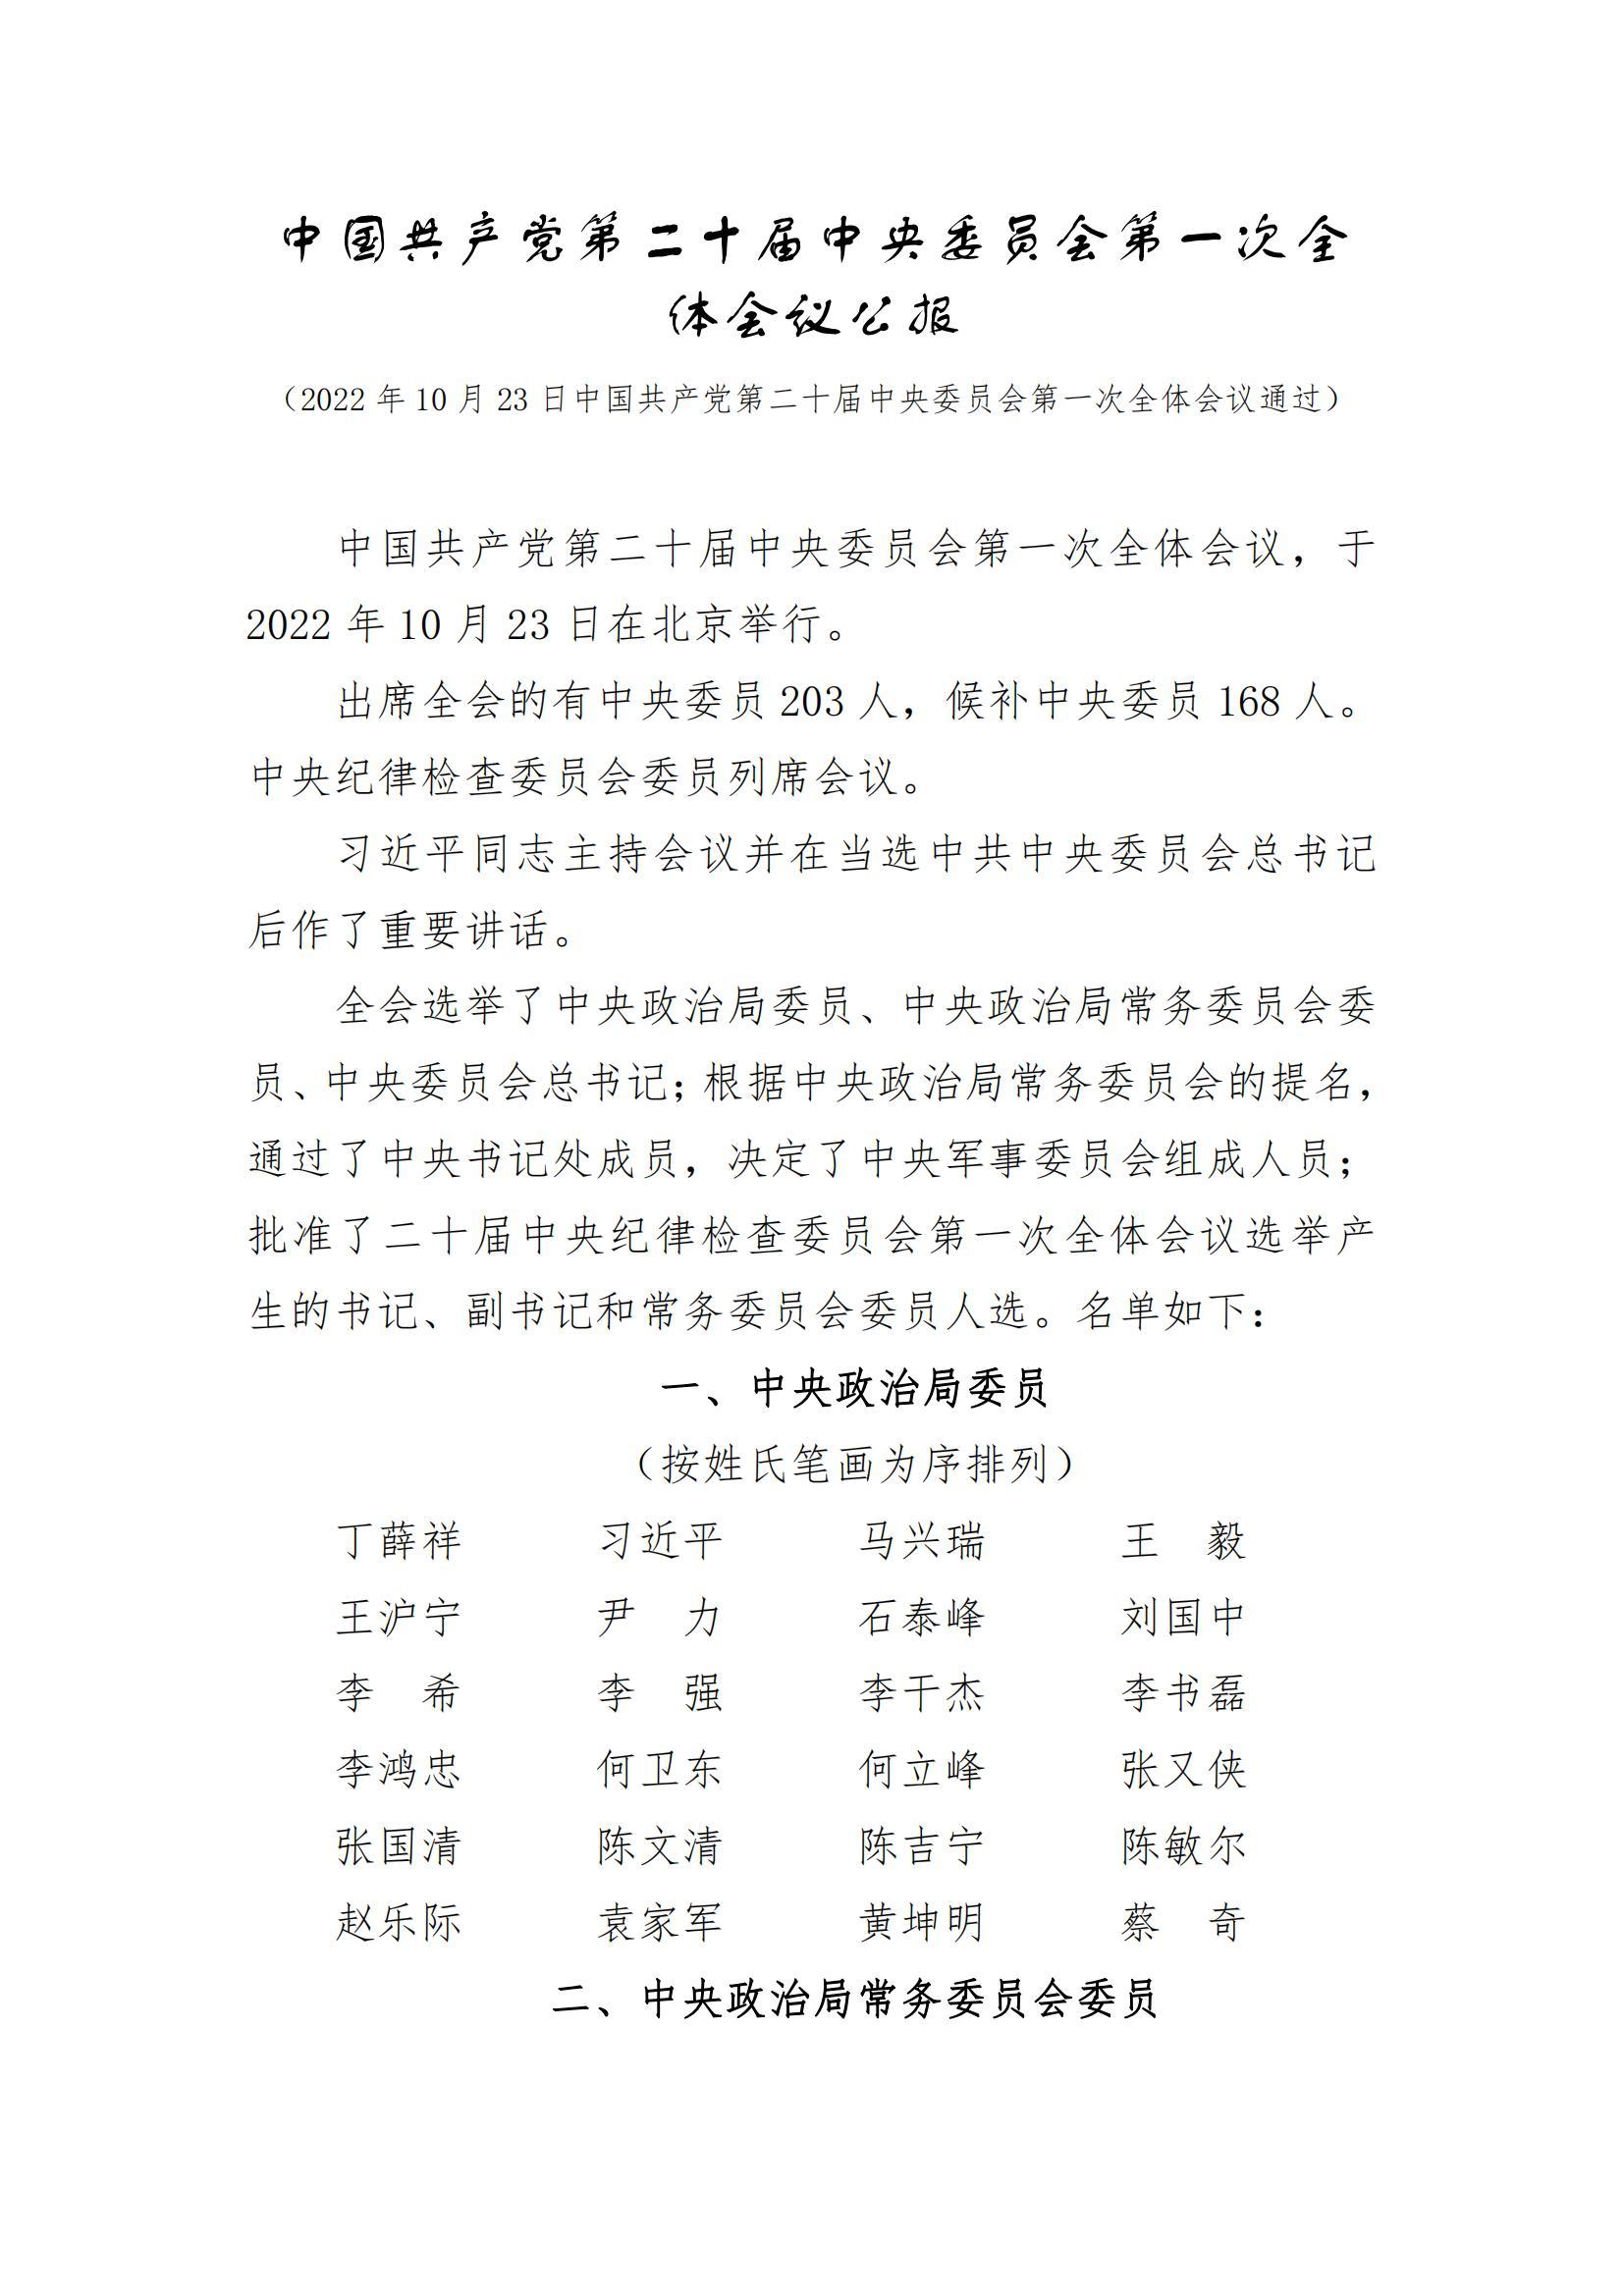 中国共产党第二十届中央委员会第一次全体会议公报_00